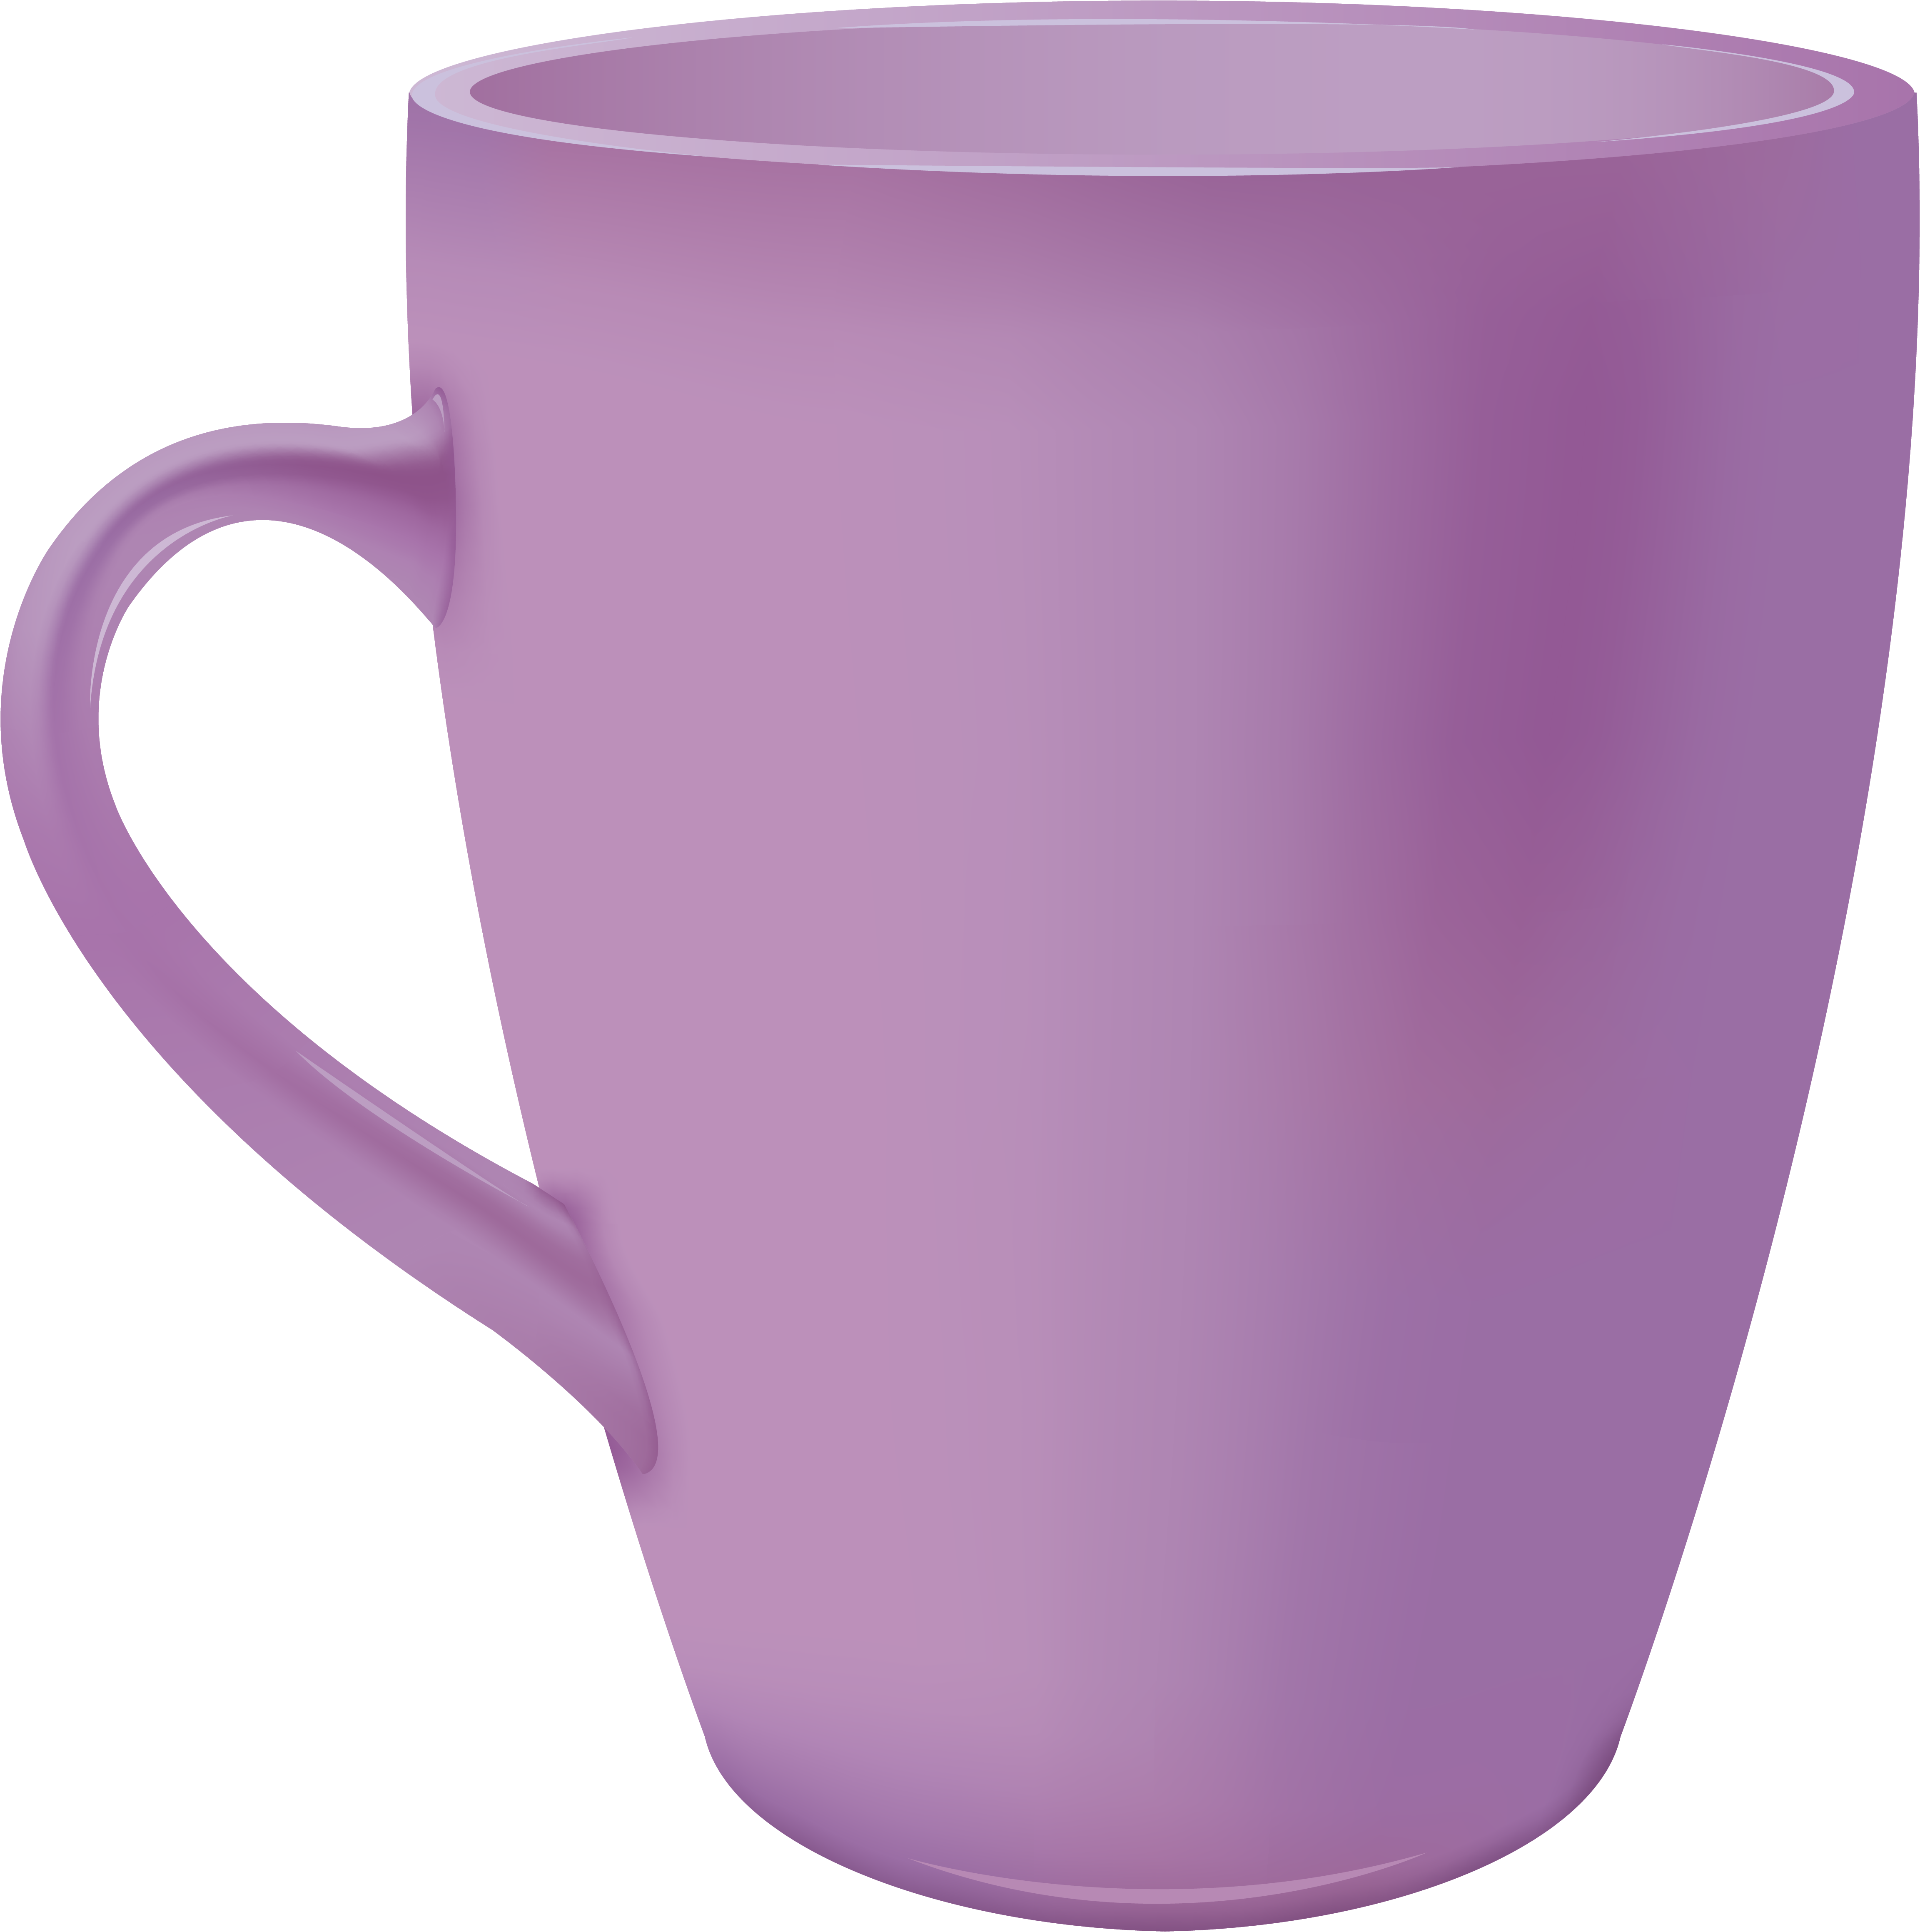 A Purple Mug With A Handle